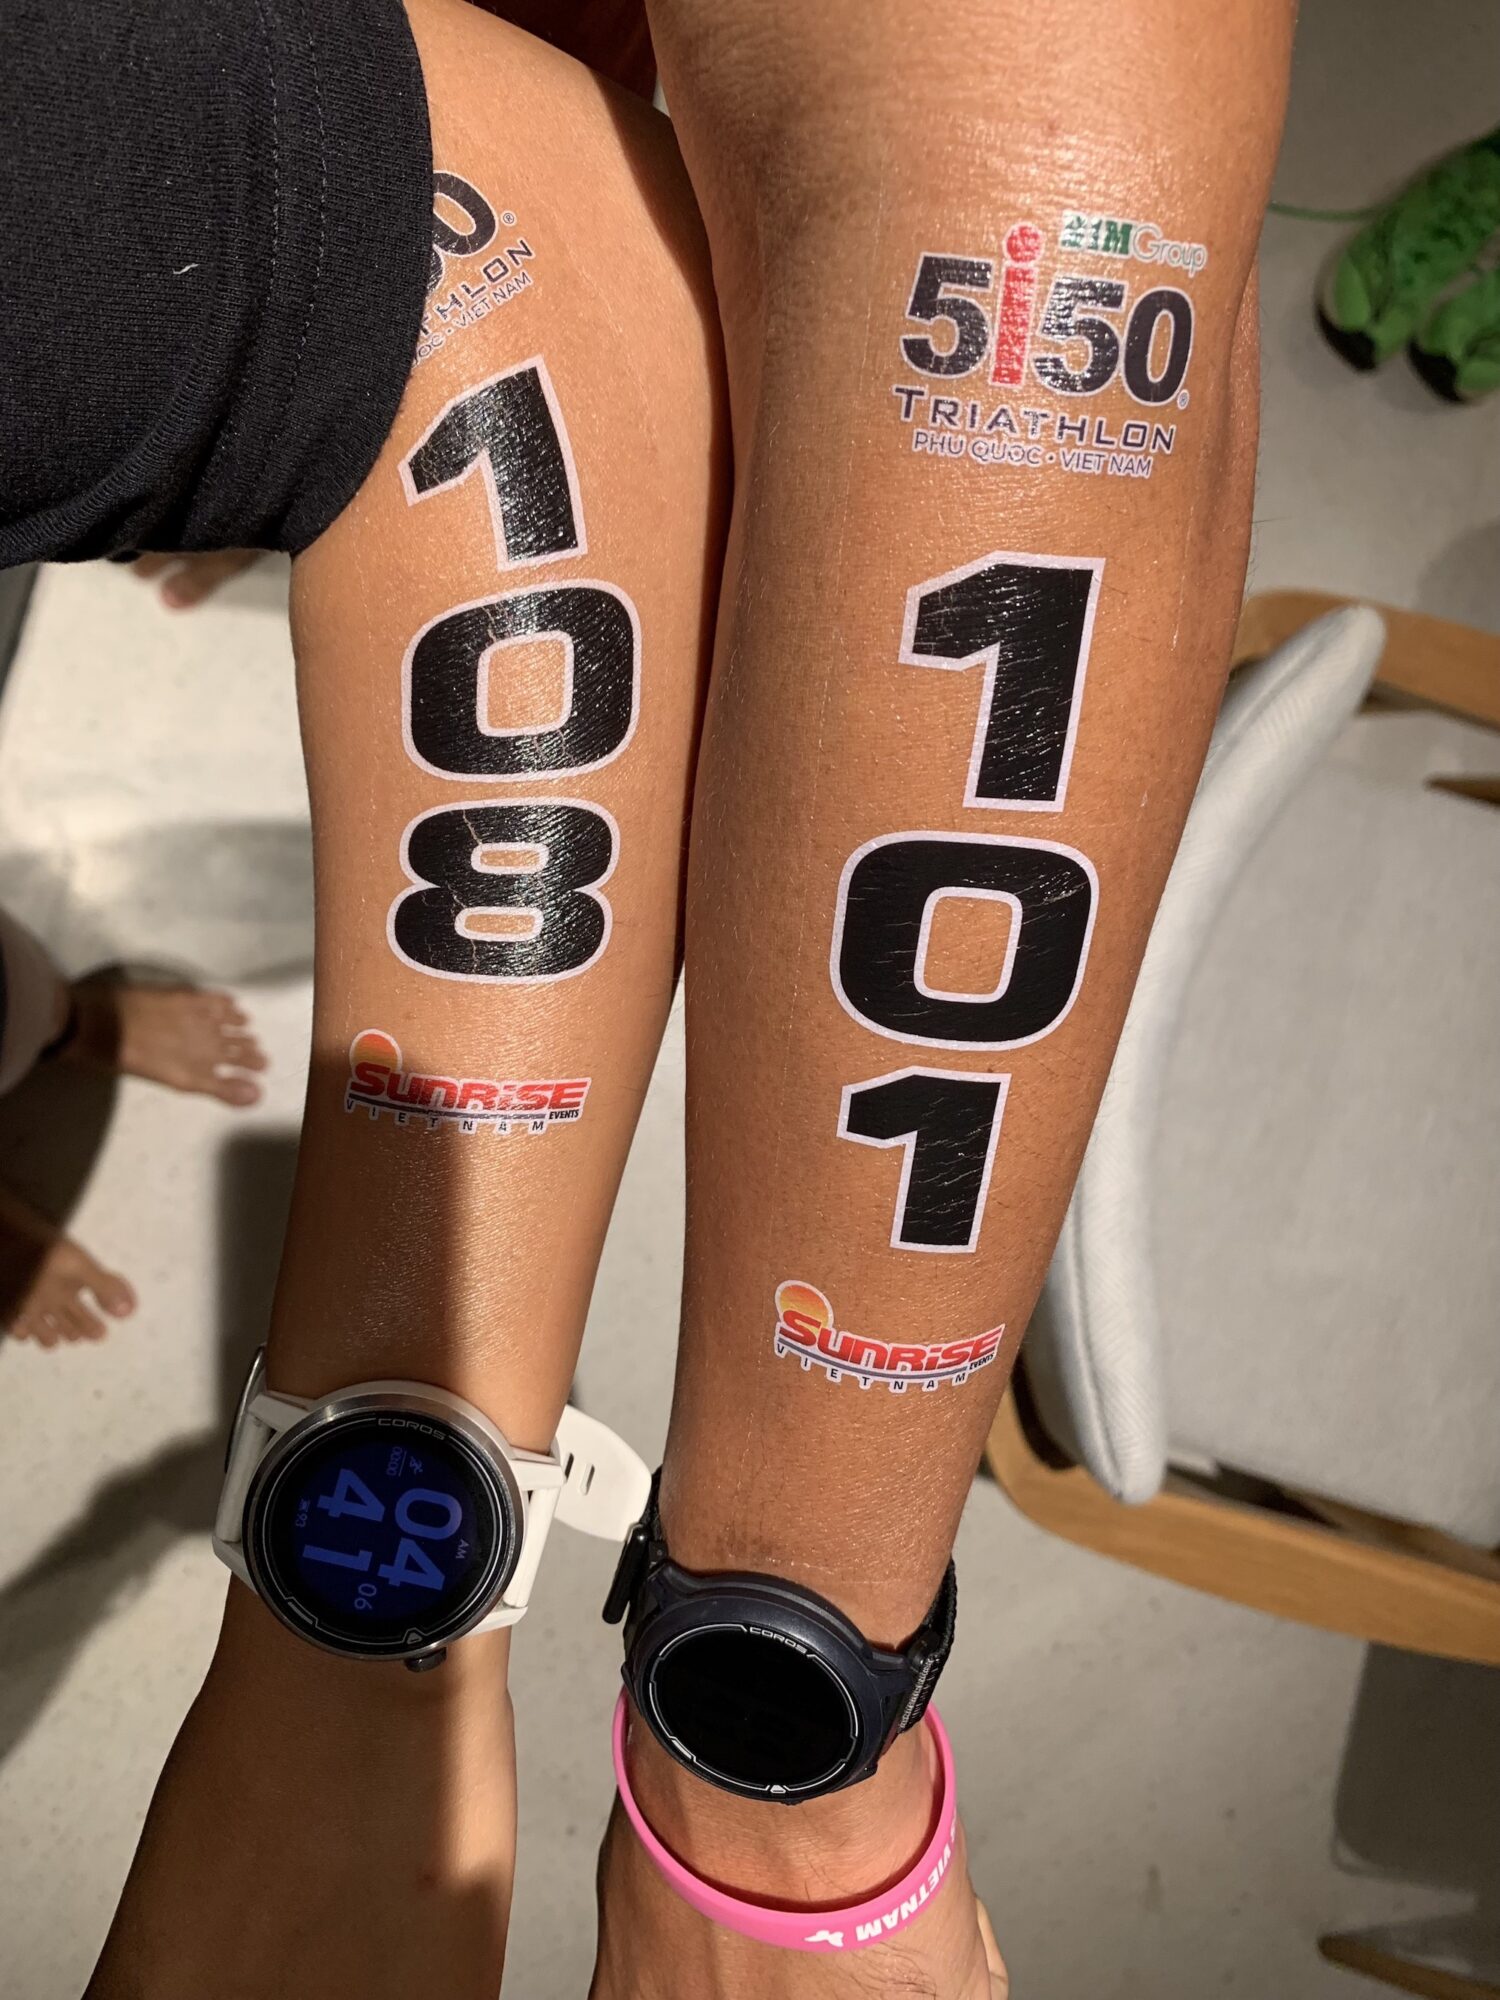 Kí sự 5150 Phú Quốc 2022 – [Phần 3] Chơi hết sức, cháy hết mình - 5150 triathlon phu quoc tattoo